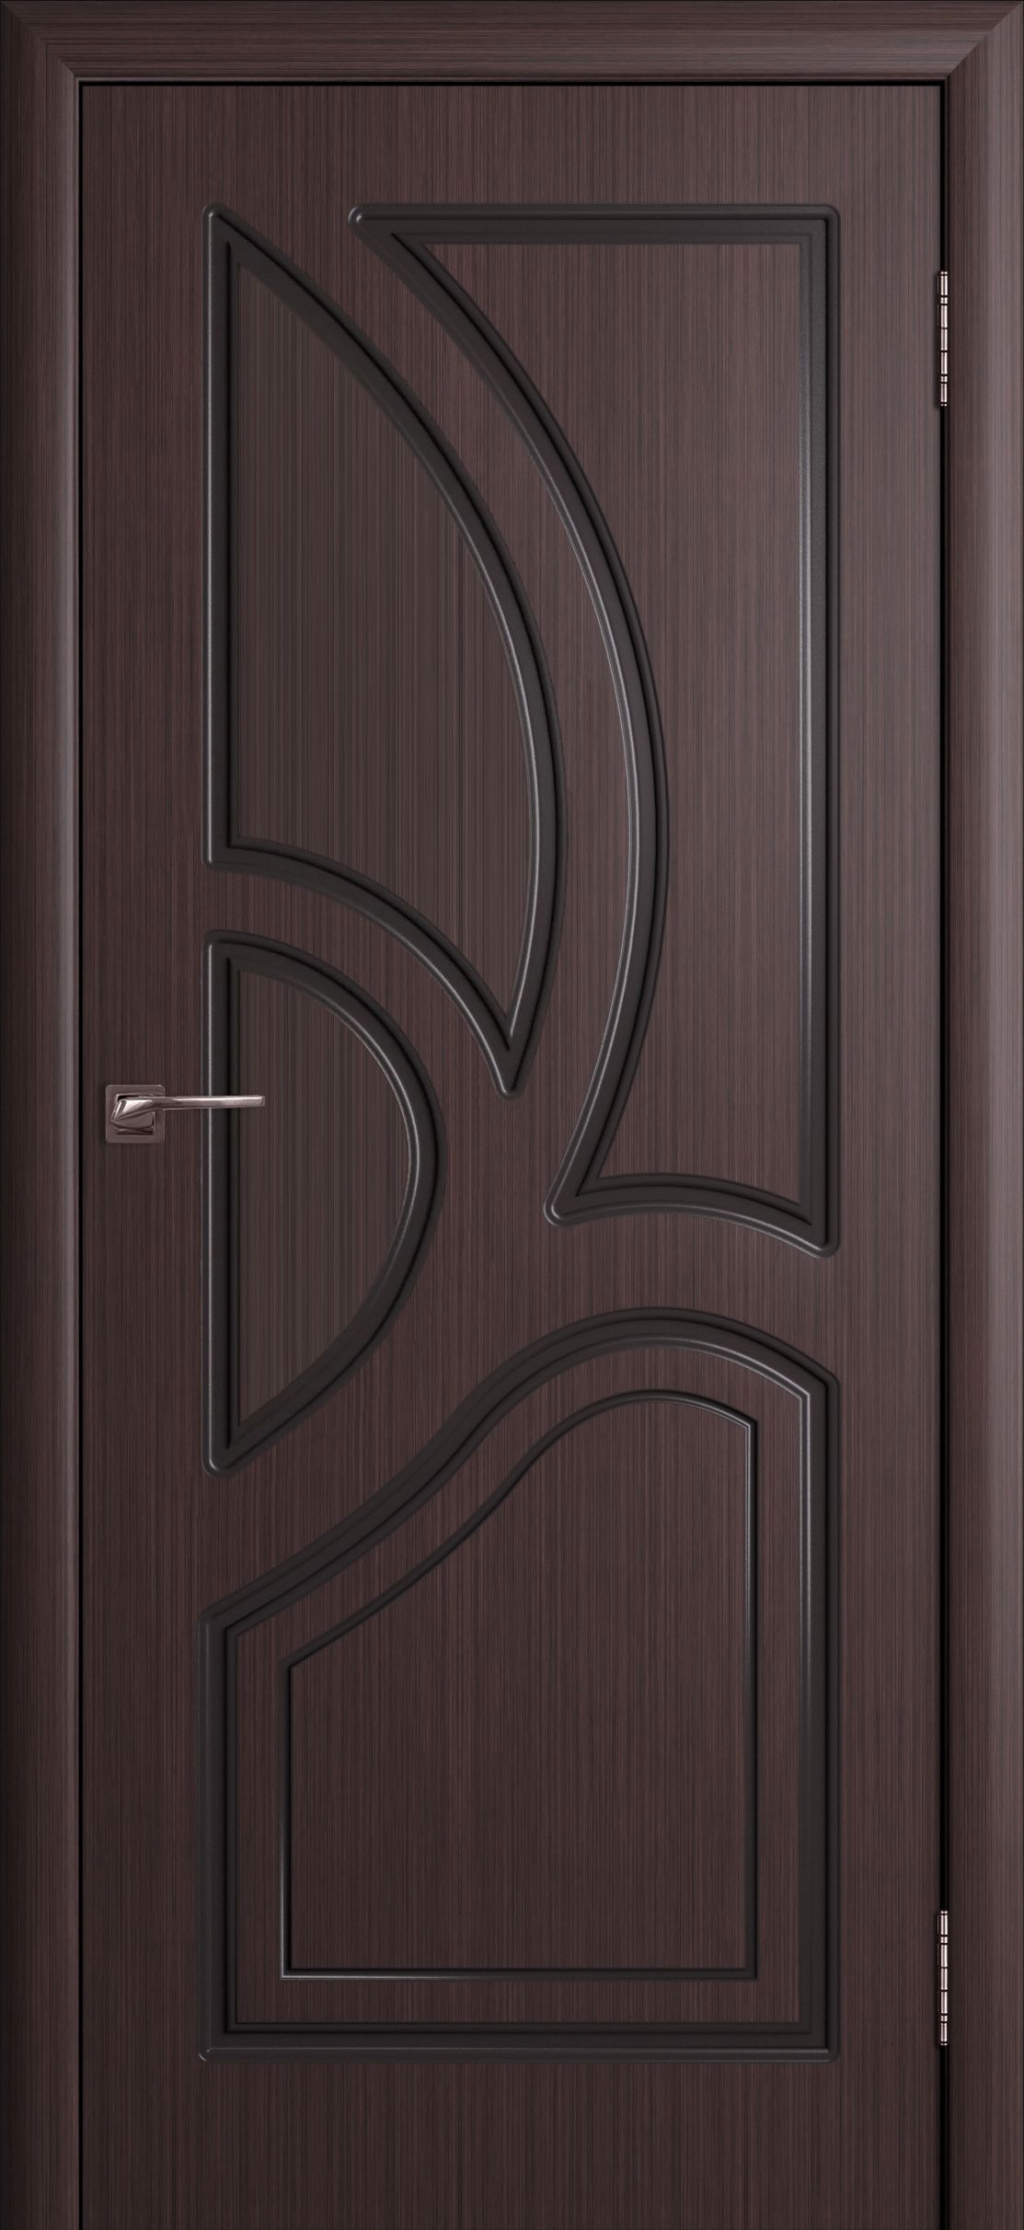 Cordondoor Межкомнатная дверь Велес ПГ, арт. 10614 - фото №1